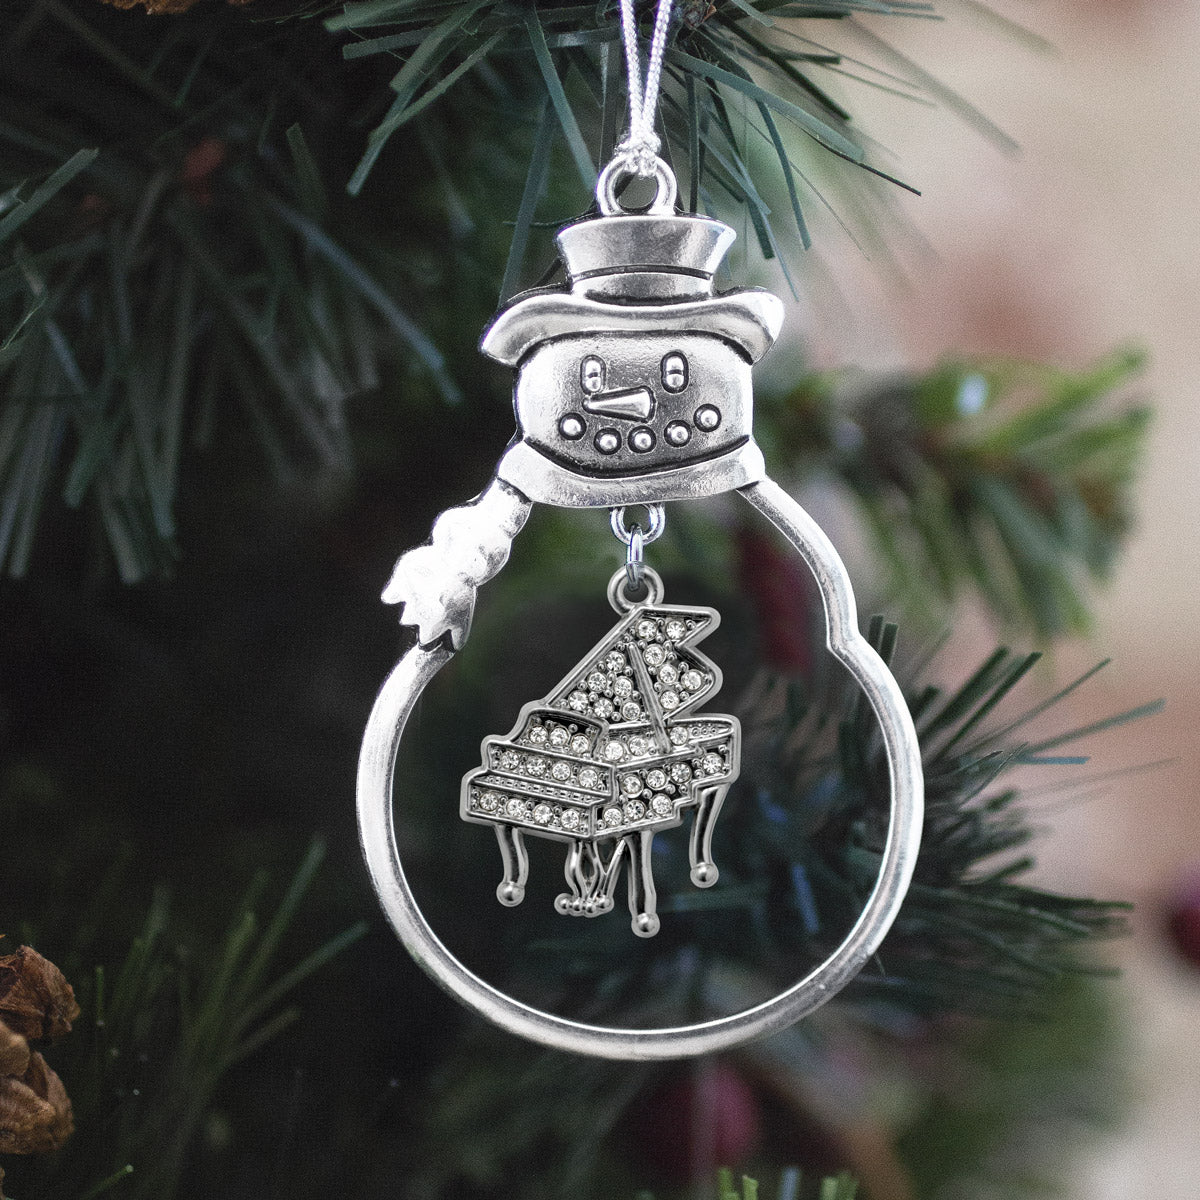 Silver Piano Charm Snowman Ornament